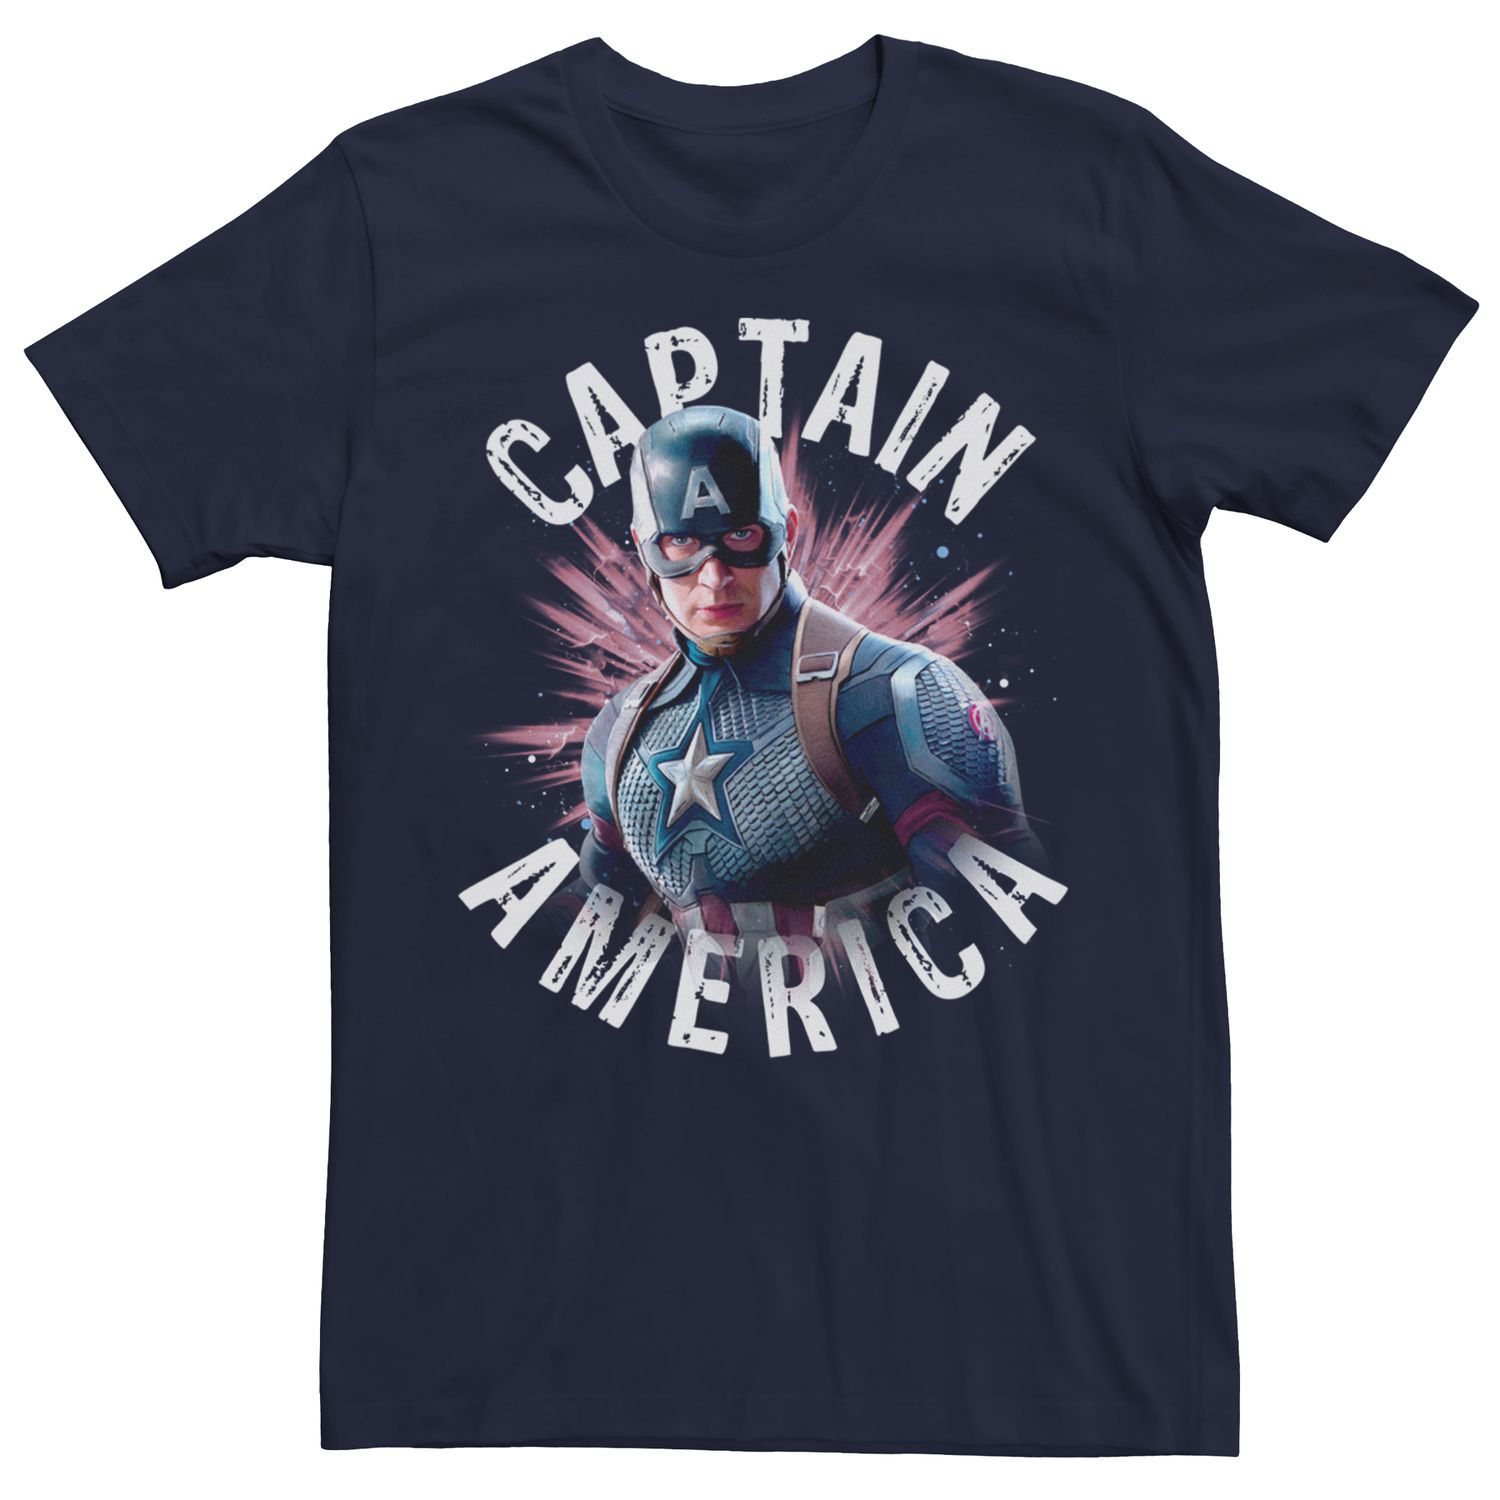 Мужская футболка Marvel Avengers Cap Burst